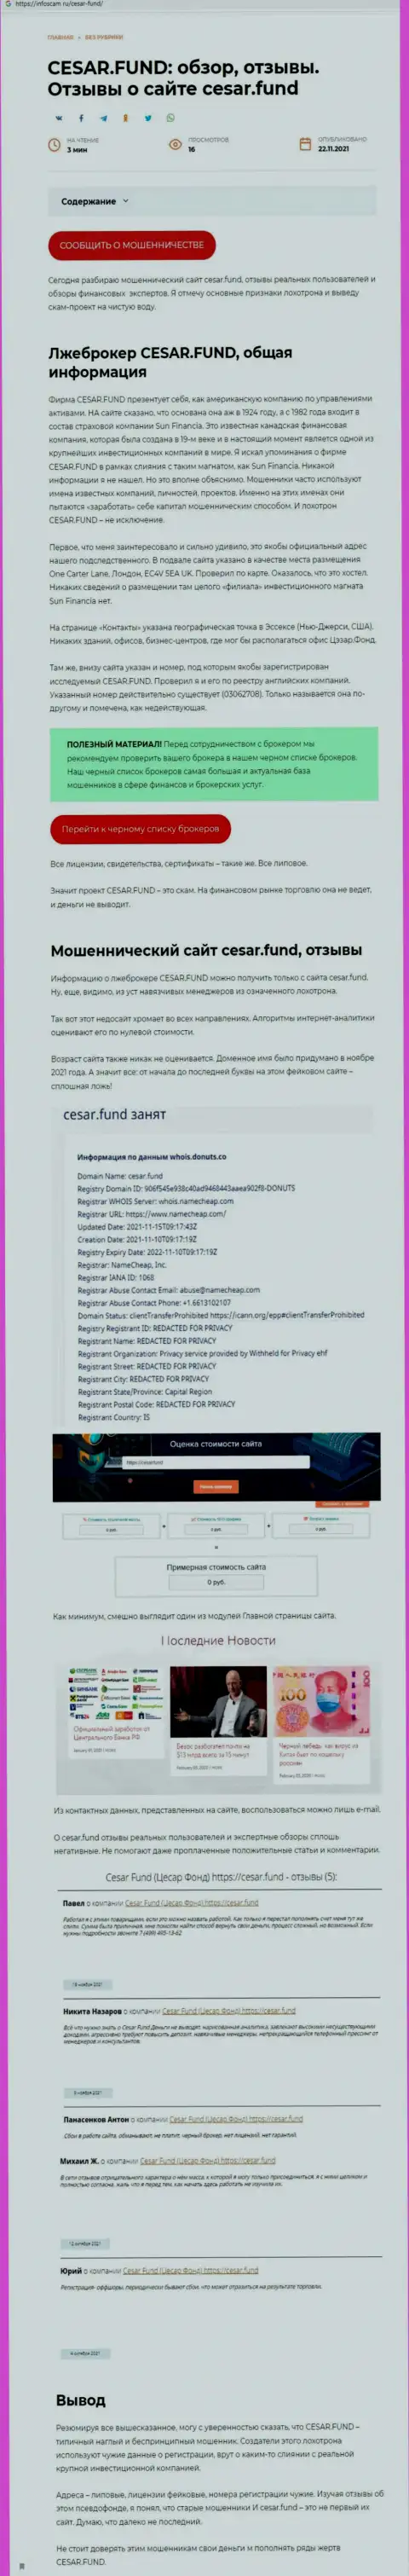 Разоблачающая, на полях мировой сети интернет, информация о противозаконных действиях Cesar Fund